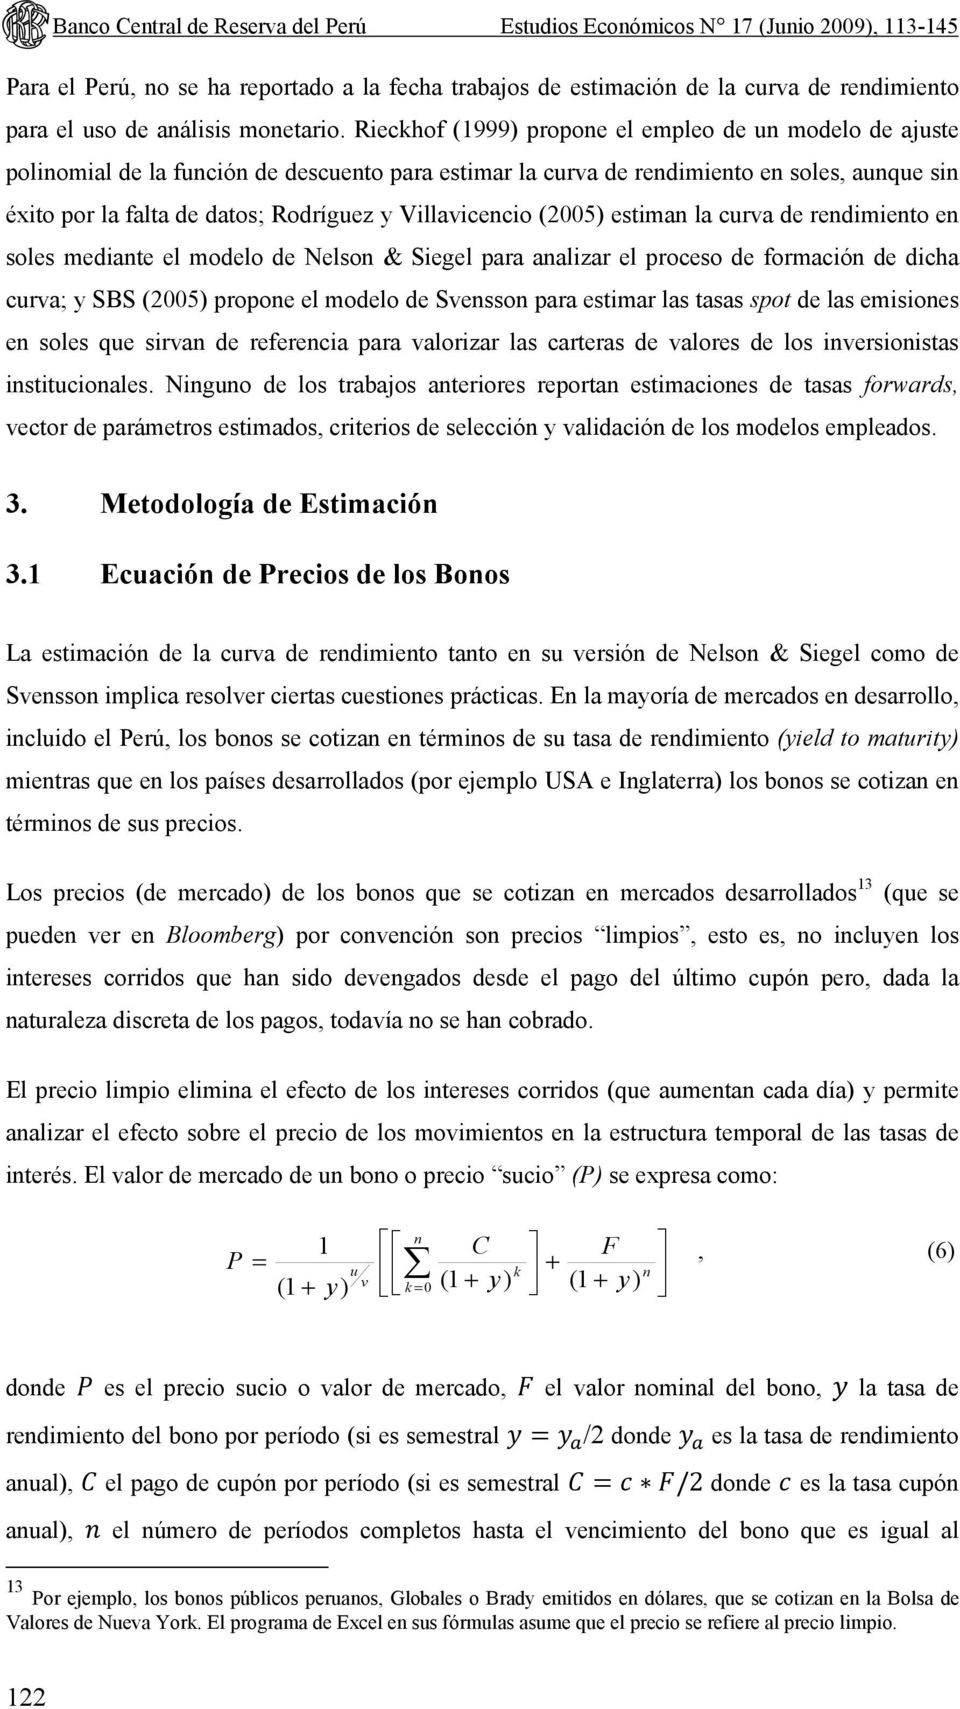 Rieckhof (1999) propone el empleo de un modelo de ajuste polinomial de la función de descuento para estimar la curva de rendimiento en soles, aunque sin éxito por la falta de datos; Rodríguez y